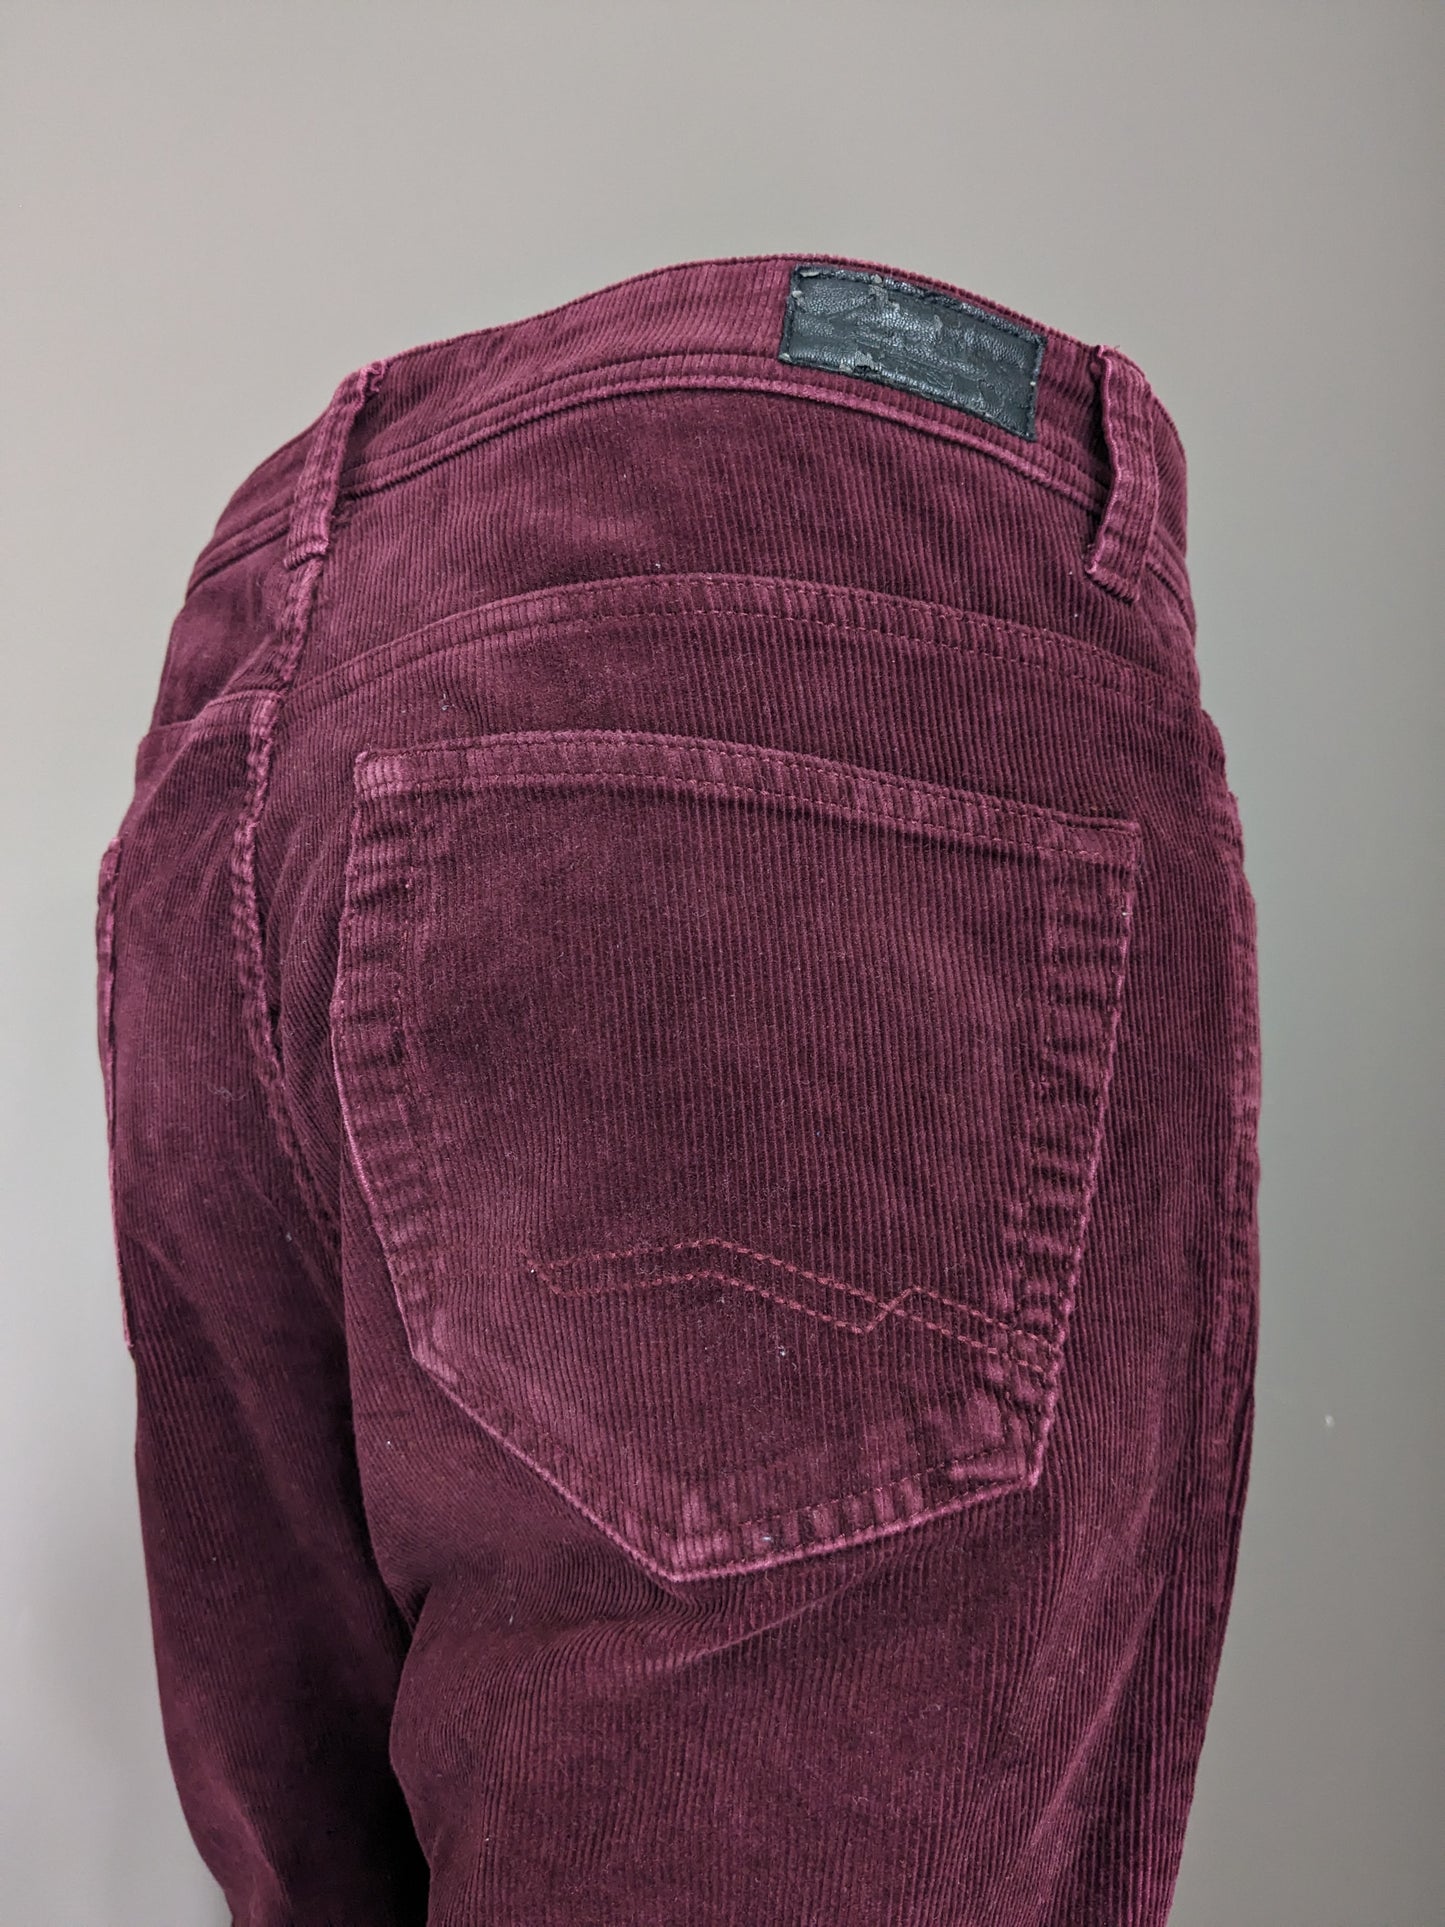 Pantalones de costilla de Canda. Burdeos de color. Tamaño W36 - L32. Estirar.